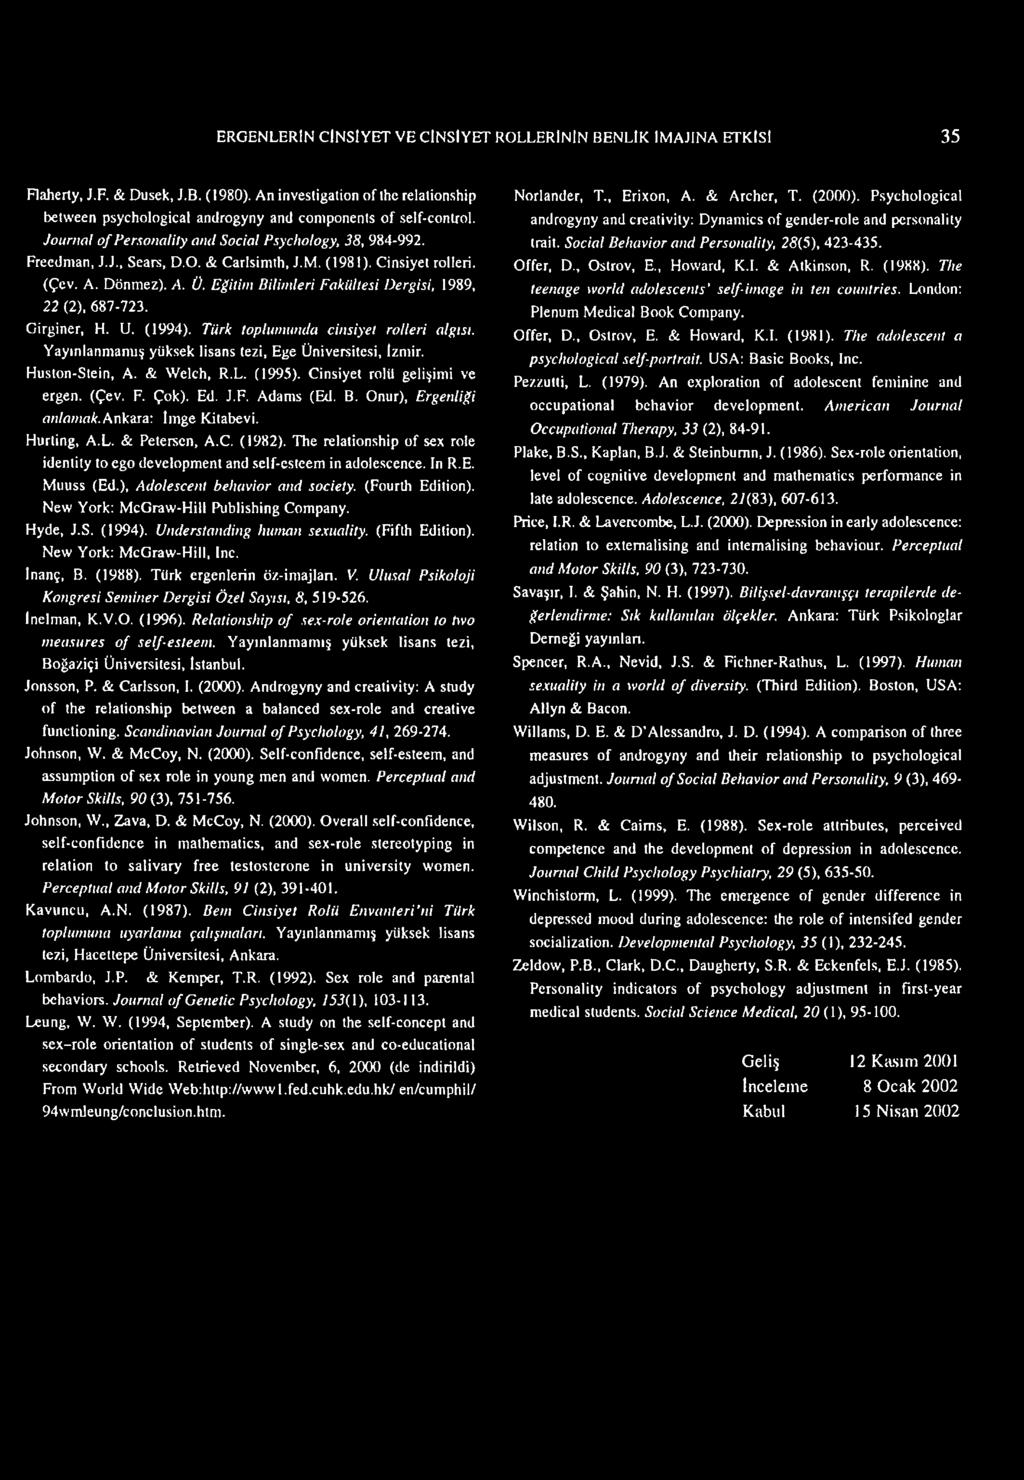 & Carlsimth, J.M. (1981). Cinsiyel rolleri. (Çev. A. Dönmez). A. Ü. Eğitim Bilimleri Fakültesi Dergisi, 1989, 22 (2). 687-723. Girginer, H. U. (1994). Türk toplumunda cinsiyet rolleri algısı.